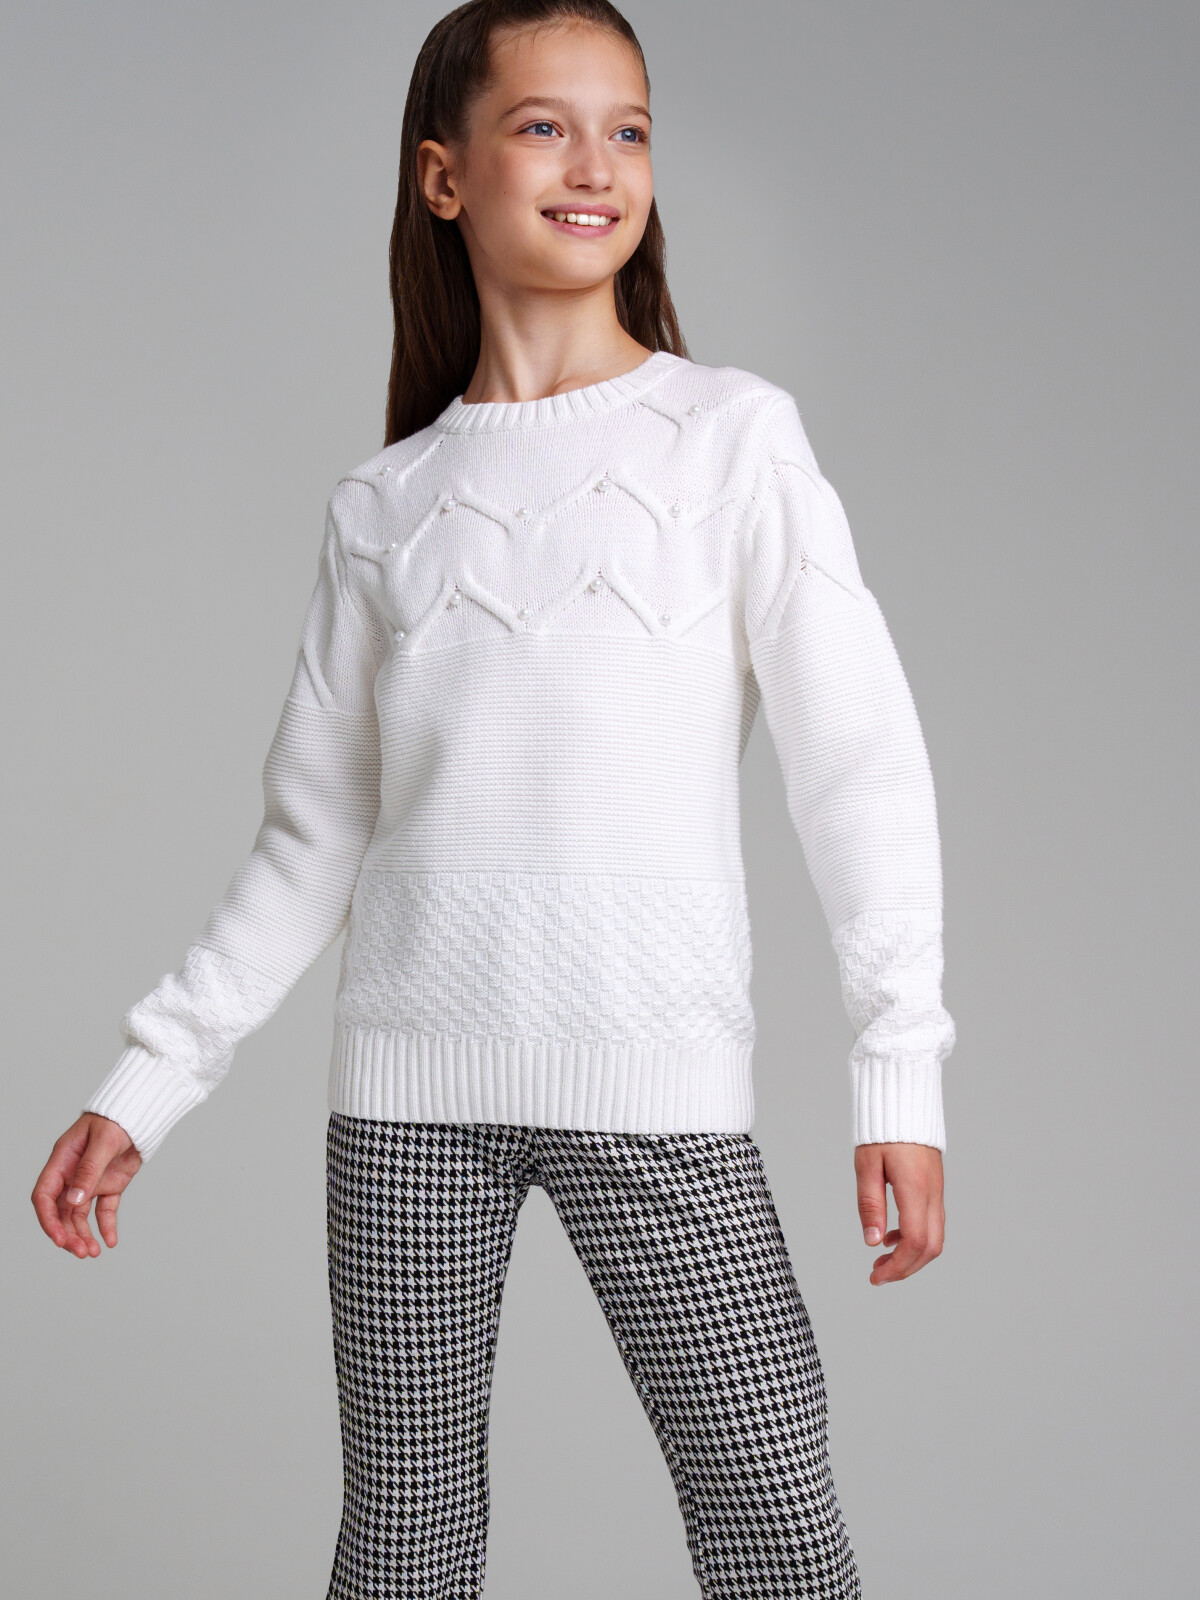 Свитер трикотажный для девочек PlayToday, белый, 134 свитер трикотажный для девочек playtoday белый 134